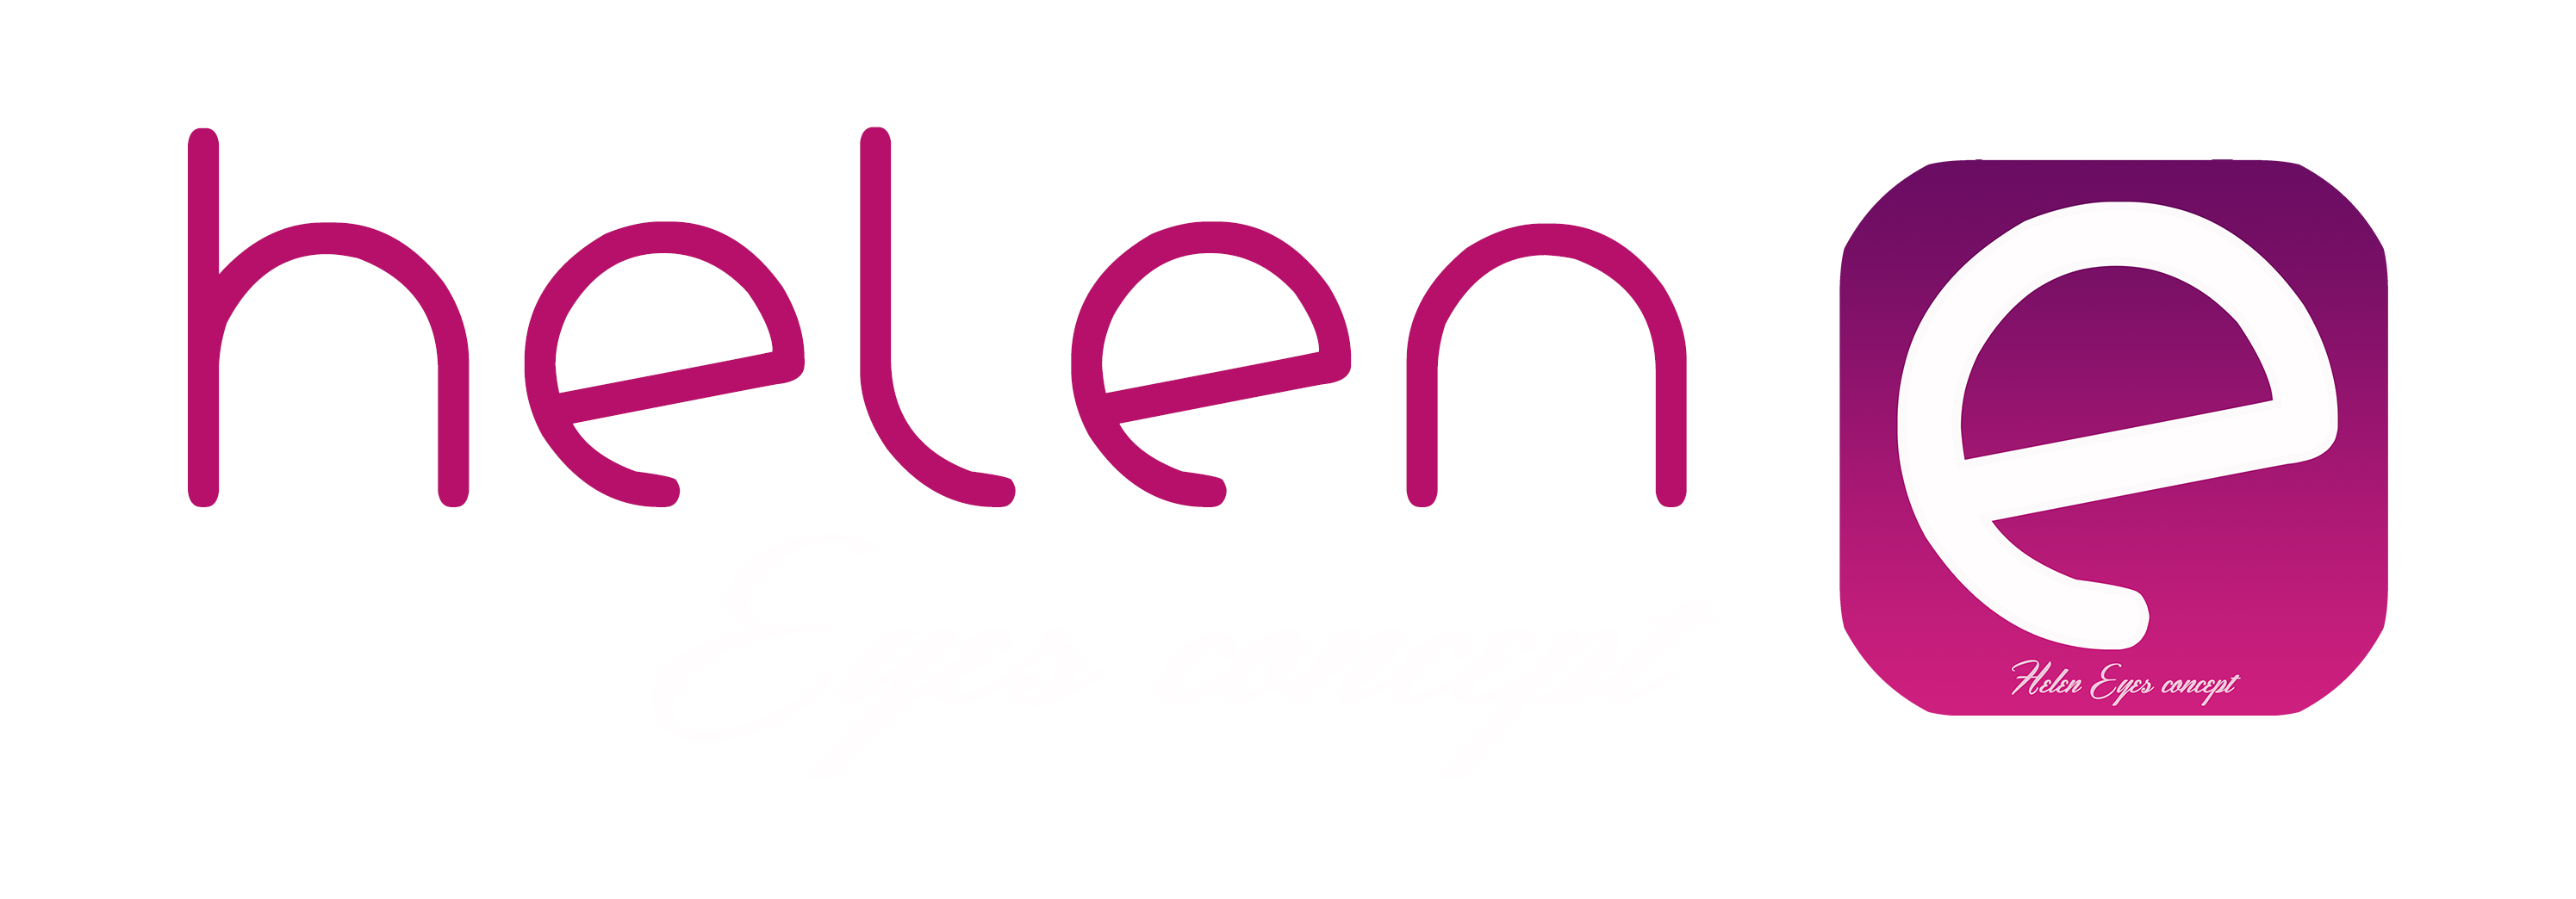 logo con scritta helen color viola e eyes concept color bianco e simbolo accanto con una e stilizzata in un quadrato